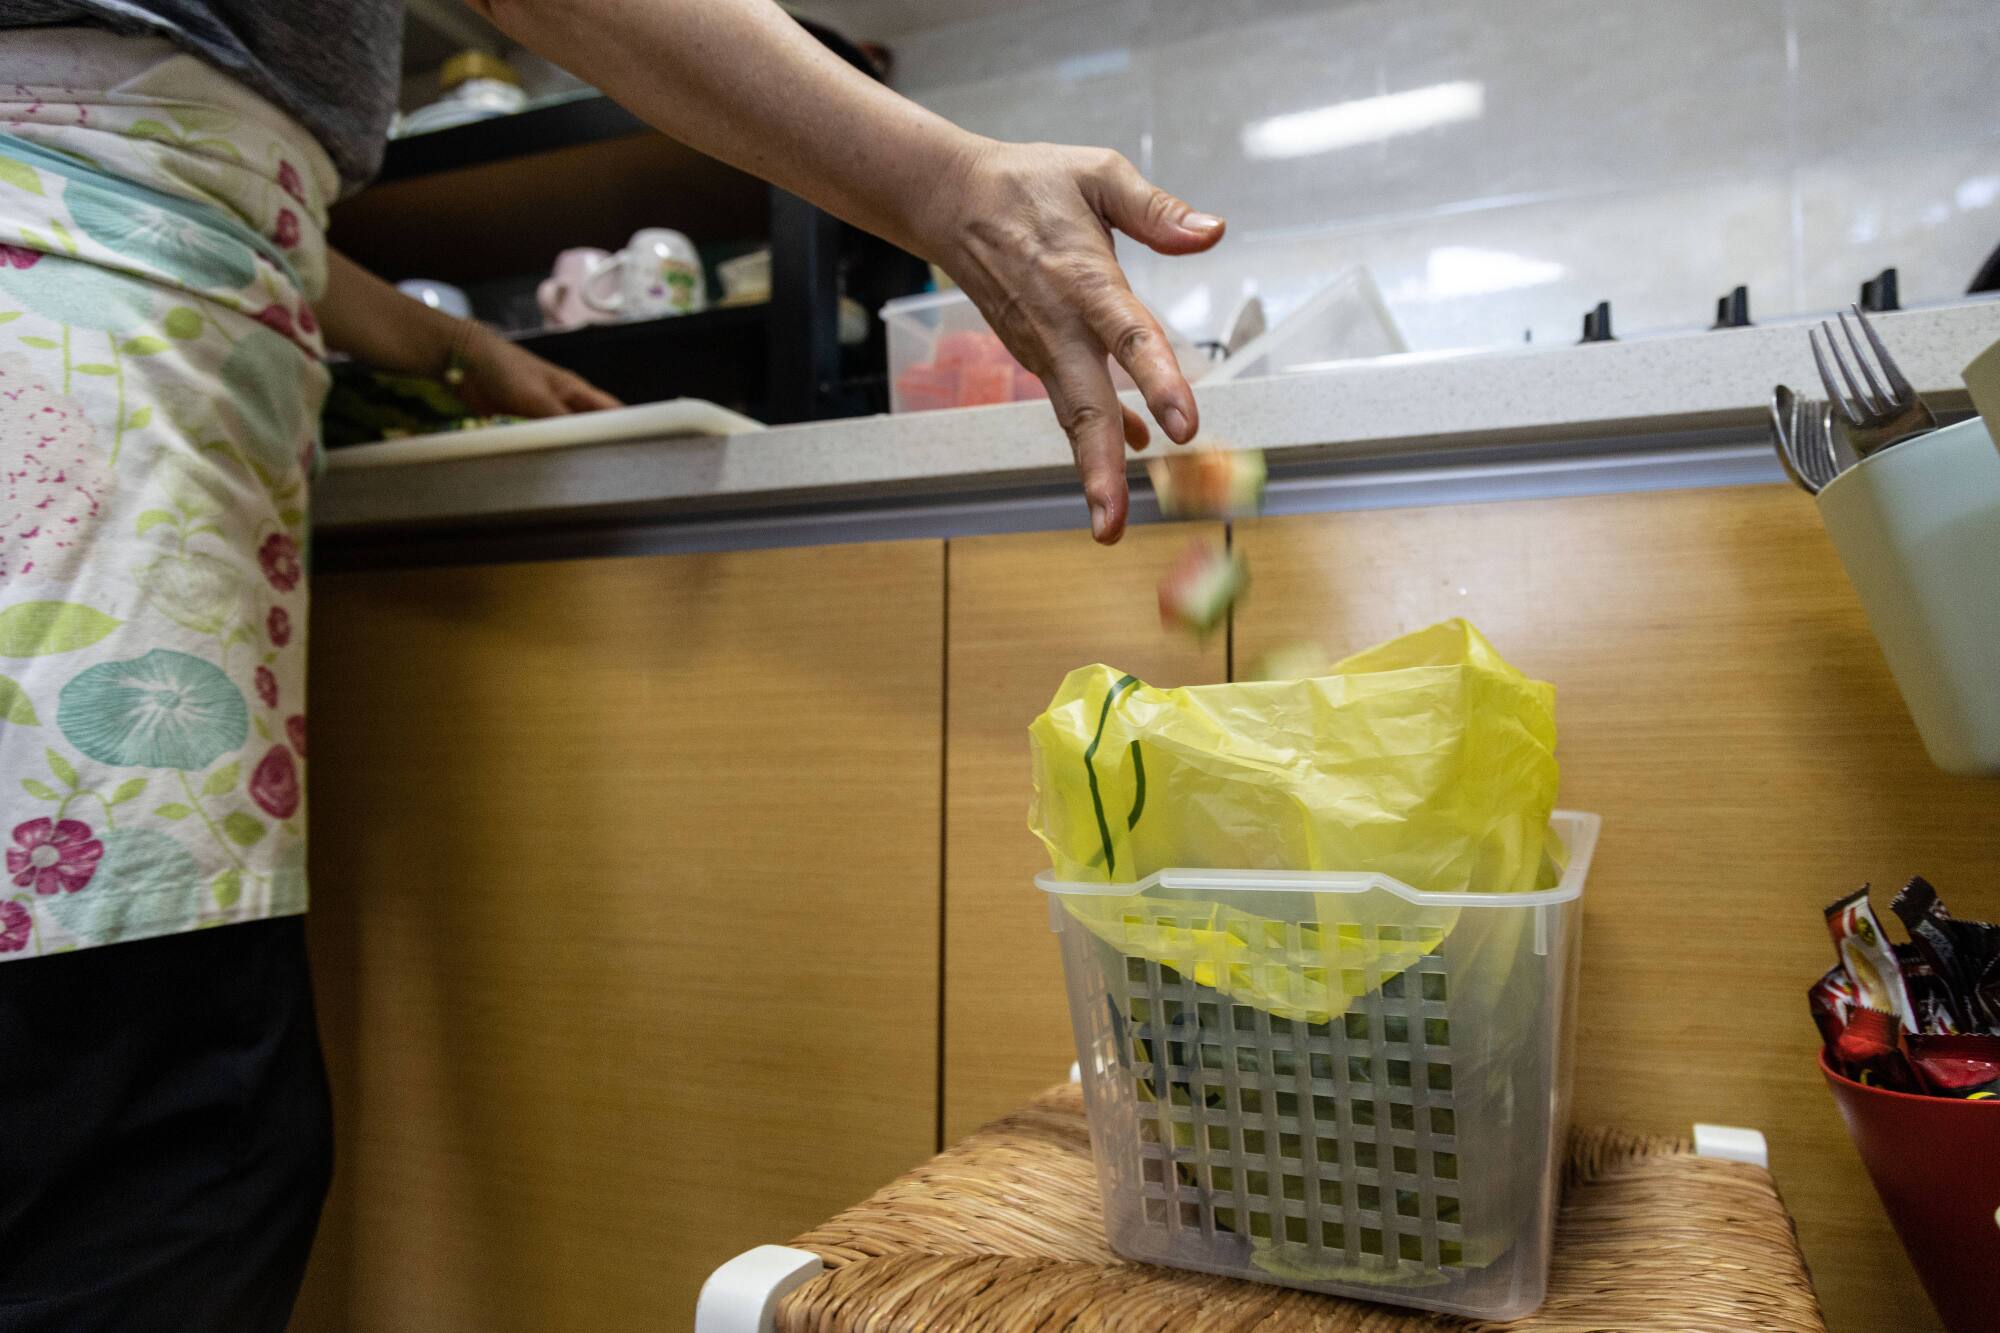 Bir kadın, karpuz kesmekten kaynaklanan atıkları, evdeki yiyecek atıkları için ayrılmış plastik bir torbaya atıyor.